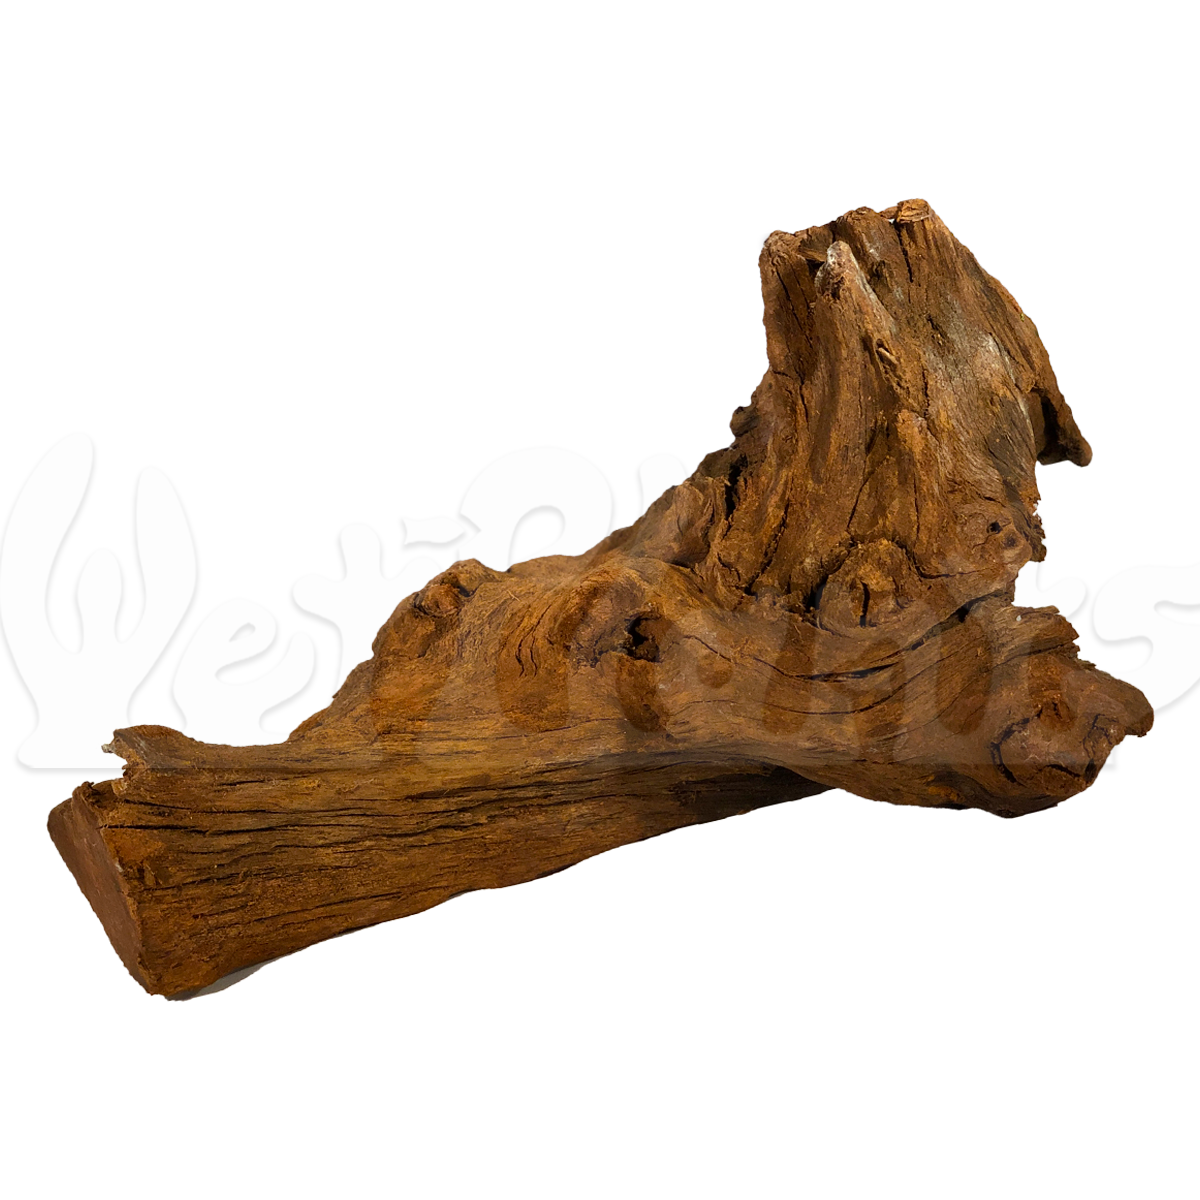 Malaysian Driftwood